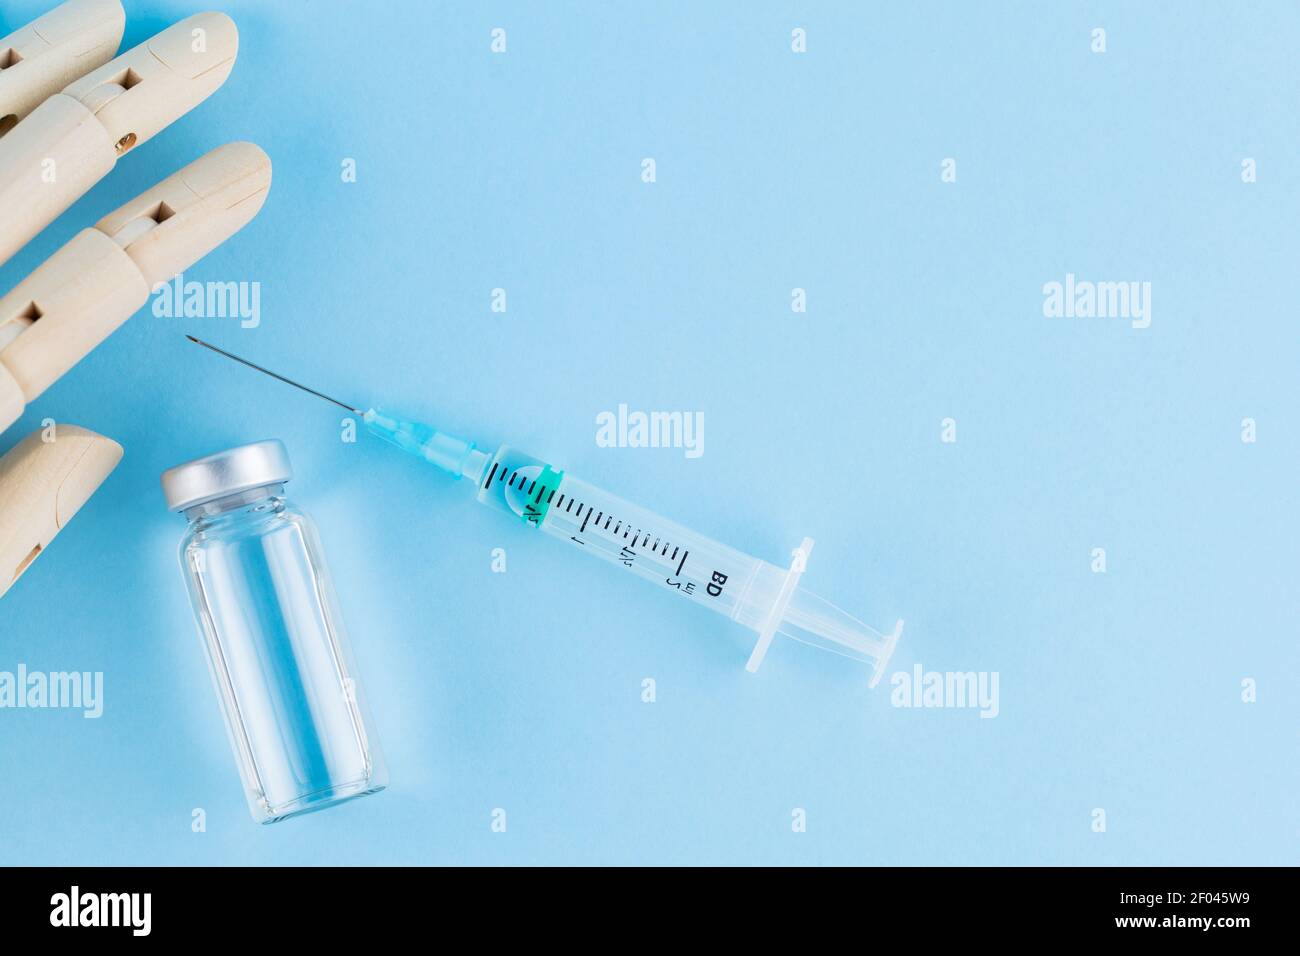 Vaccino, siringa e mano umana di legno. Fiala medica e siringa su sfondo blu. Concetto di assistenza sanitaria e prevenzione delle malattie. Vista dall'alto Foto Stock